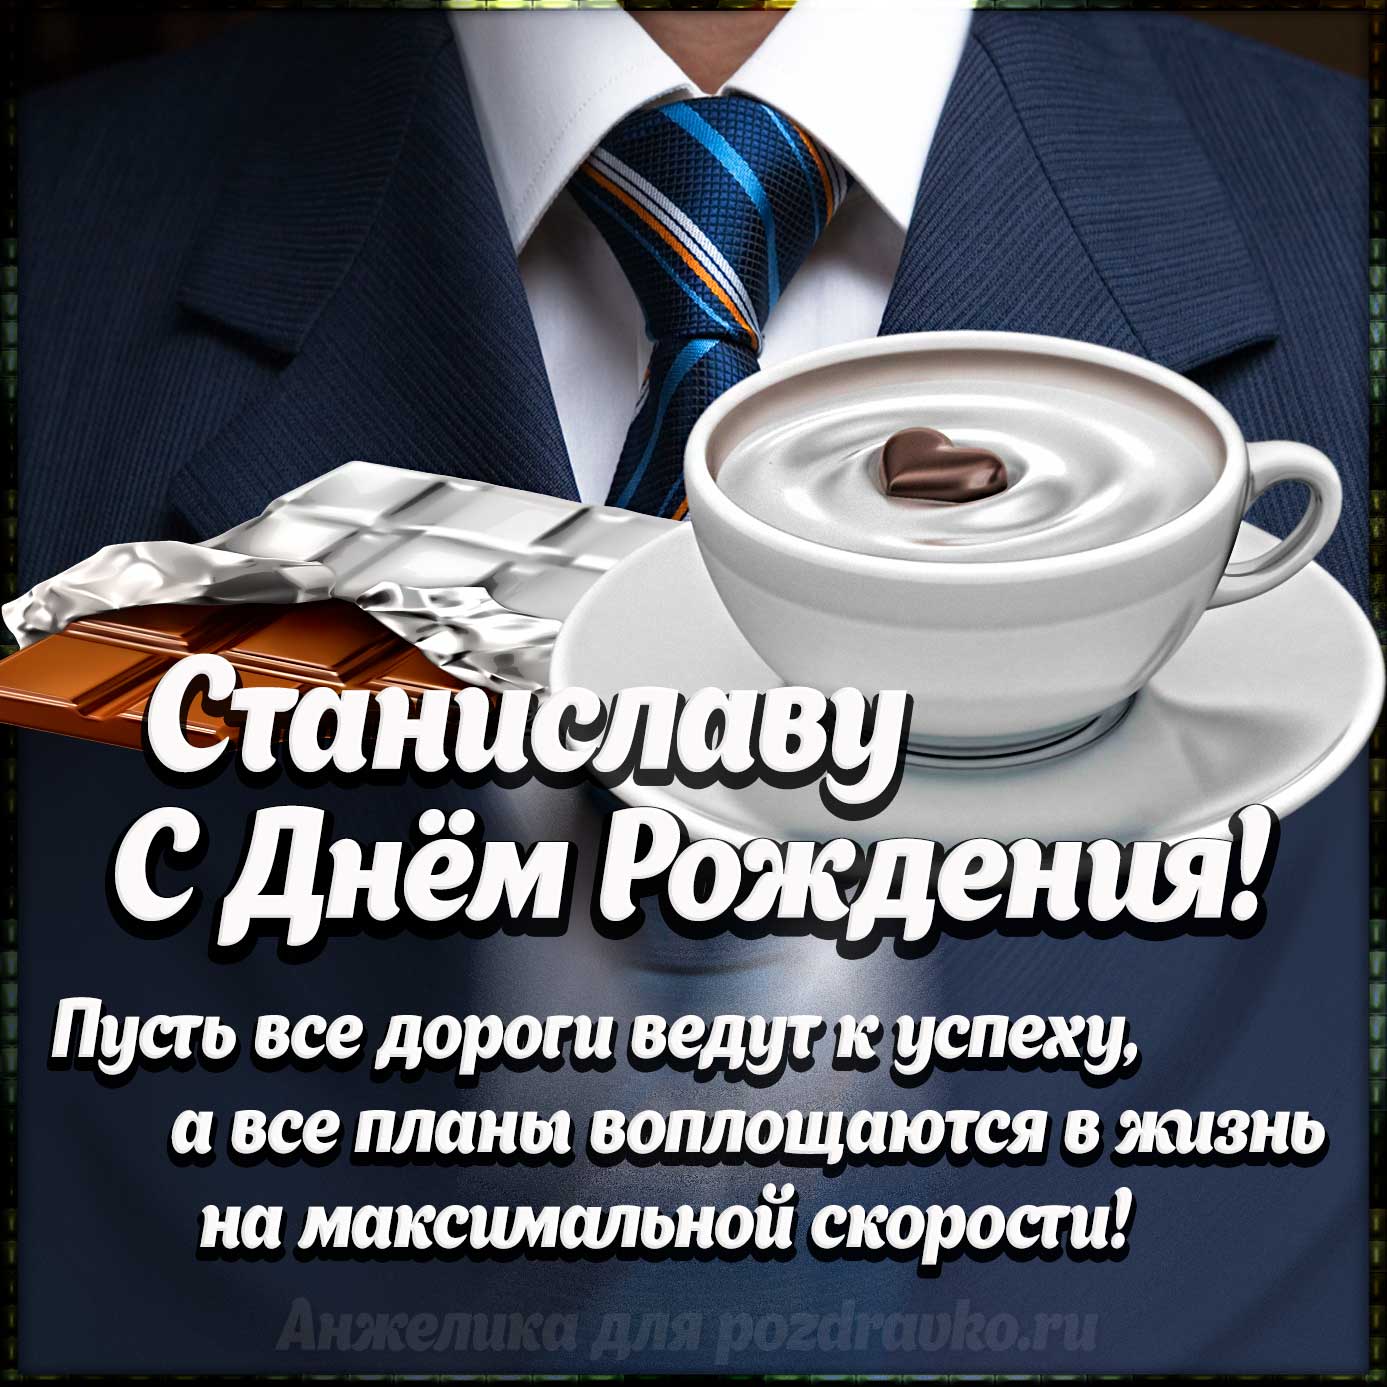 Открытка - Станиславу с Днем Рождения с галстуком, кофе и пожеланием. Скачать бесплатно или отправить картинку.